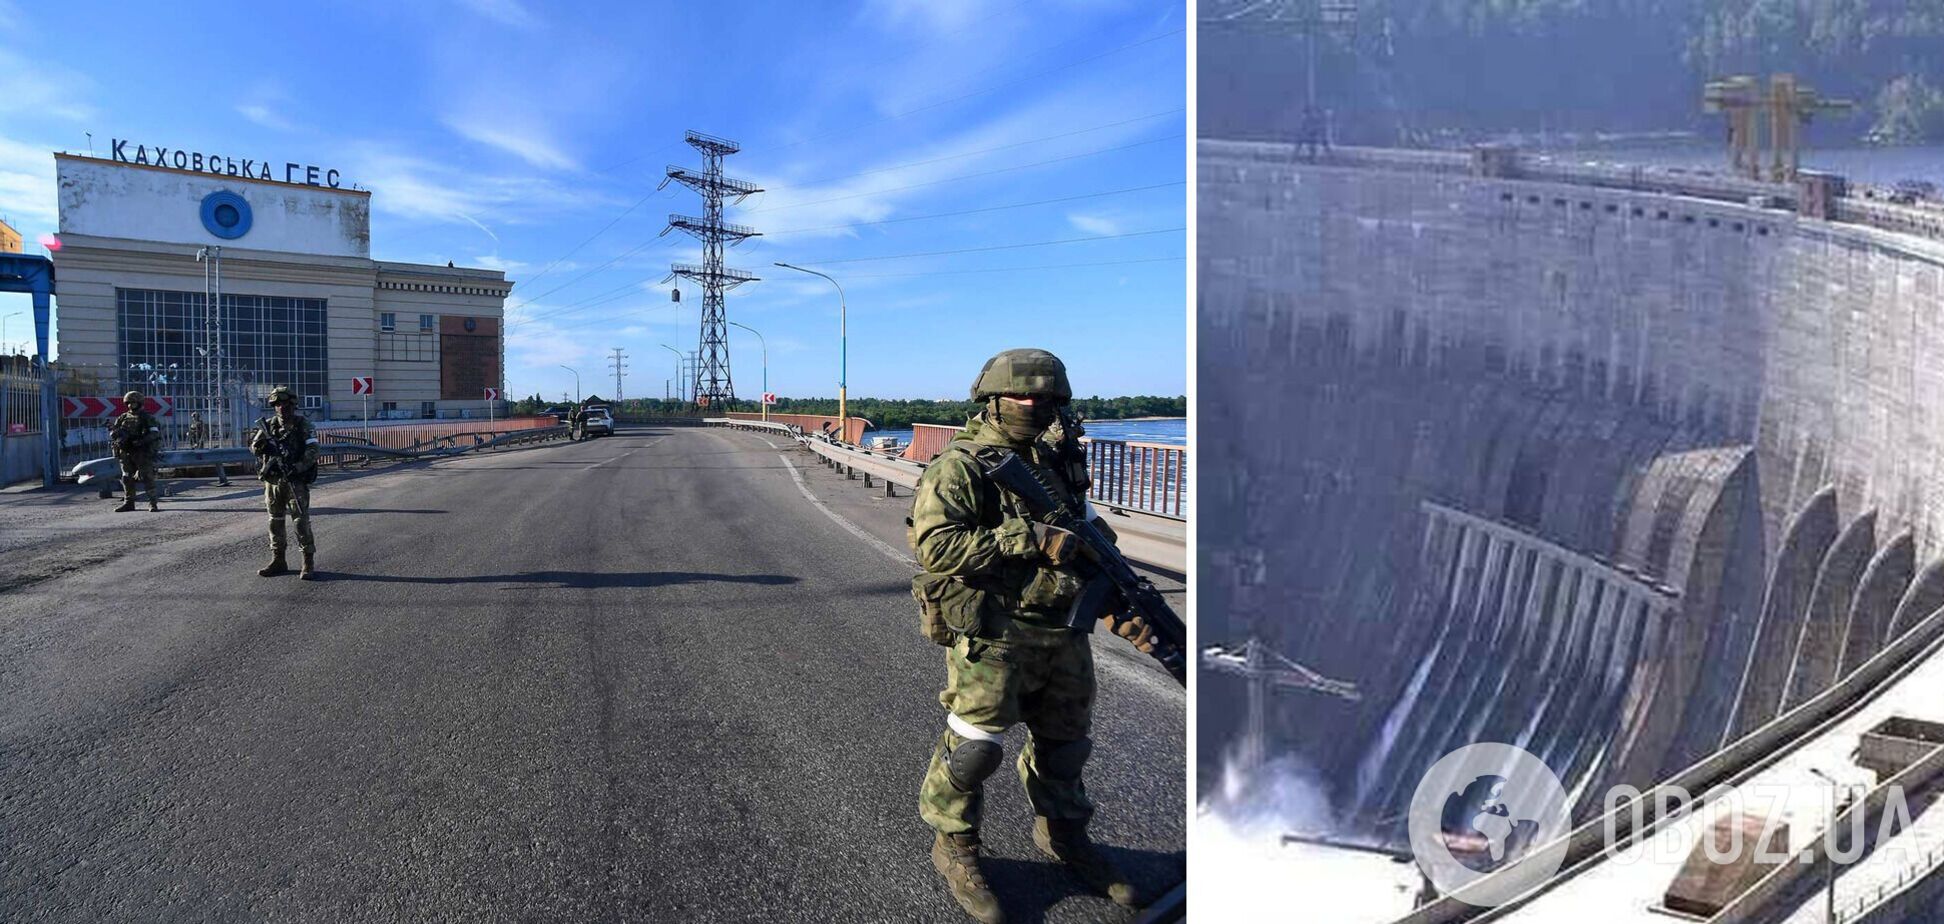 Войска РФ согнали технику к Каховской ГЭС: Хлань раскрыл замысел оккупантов